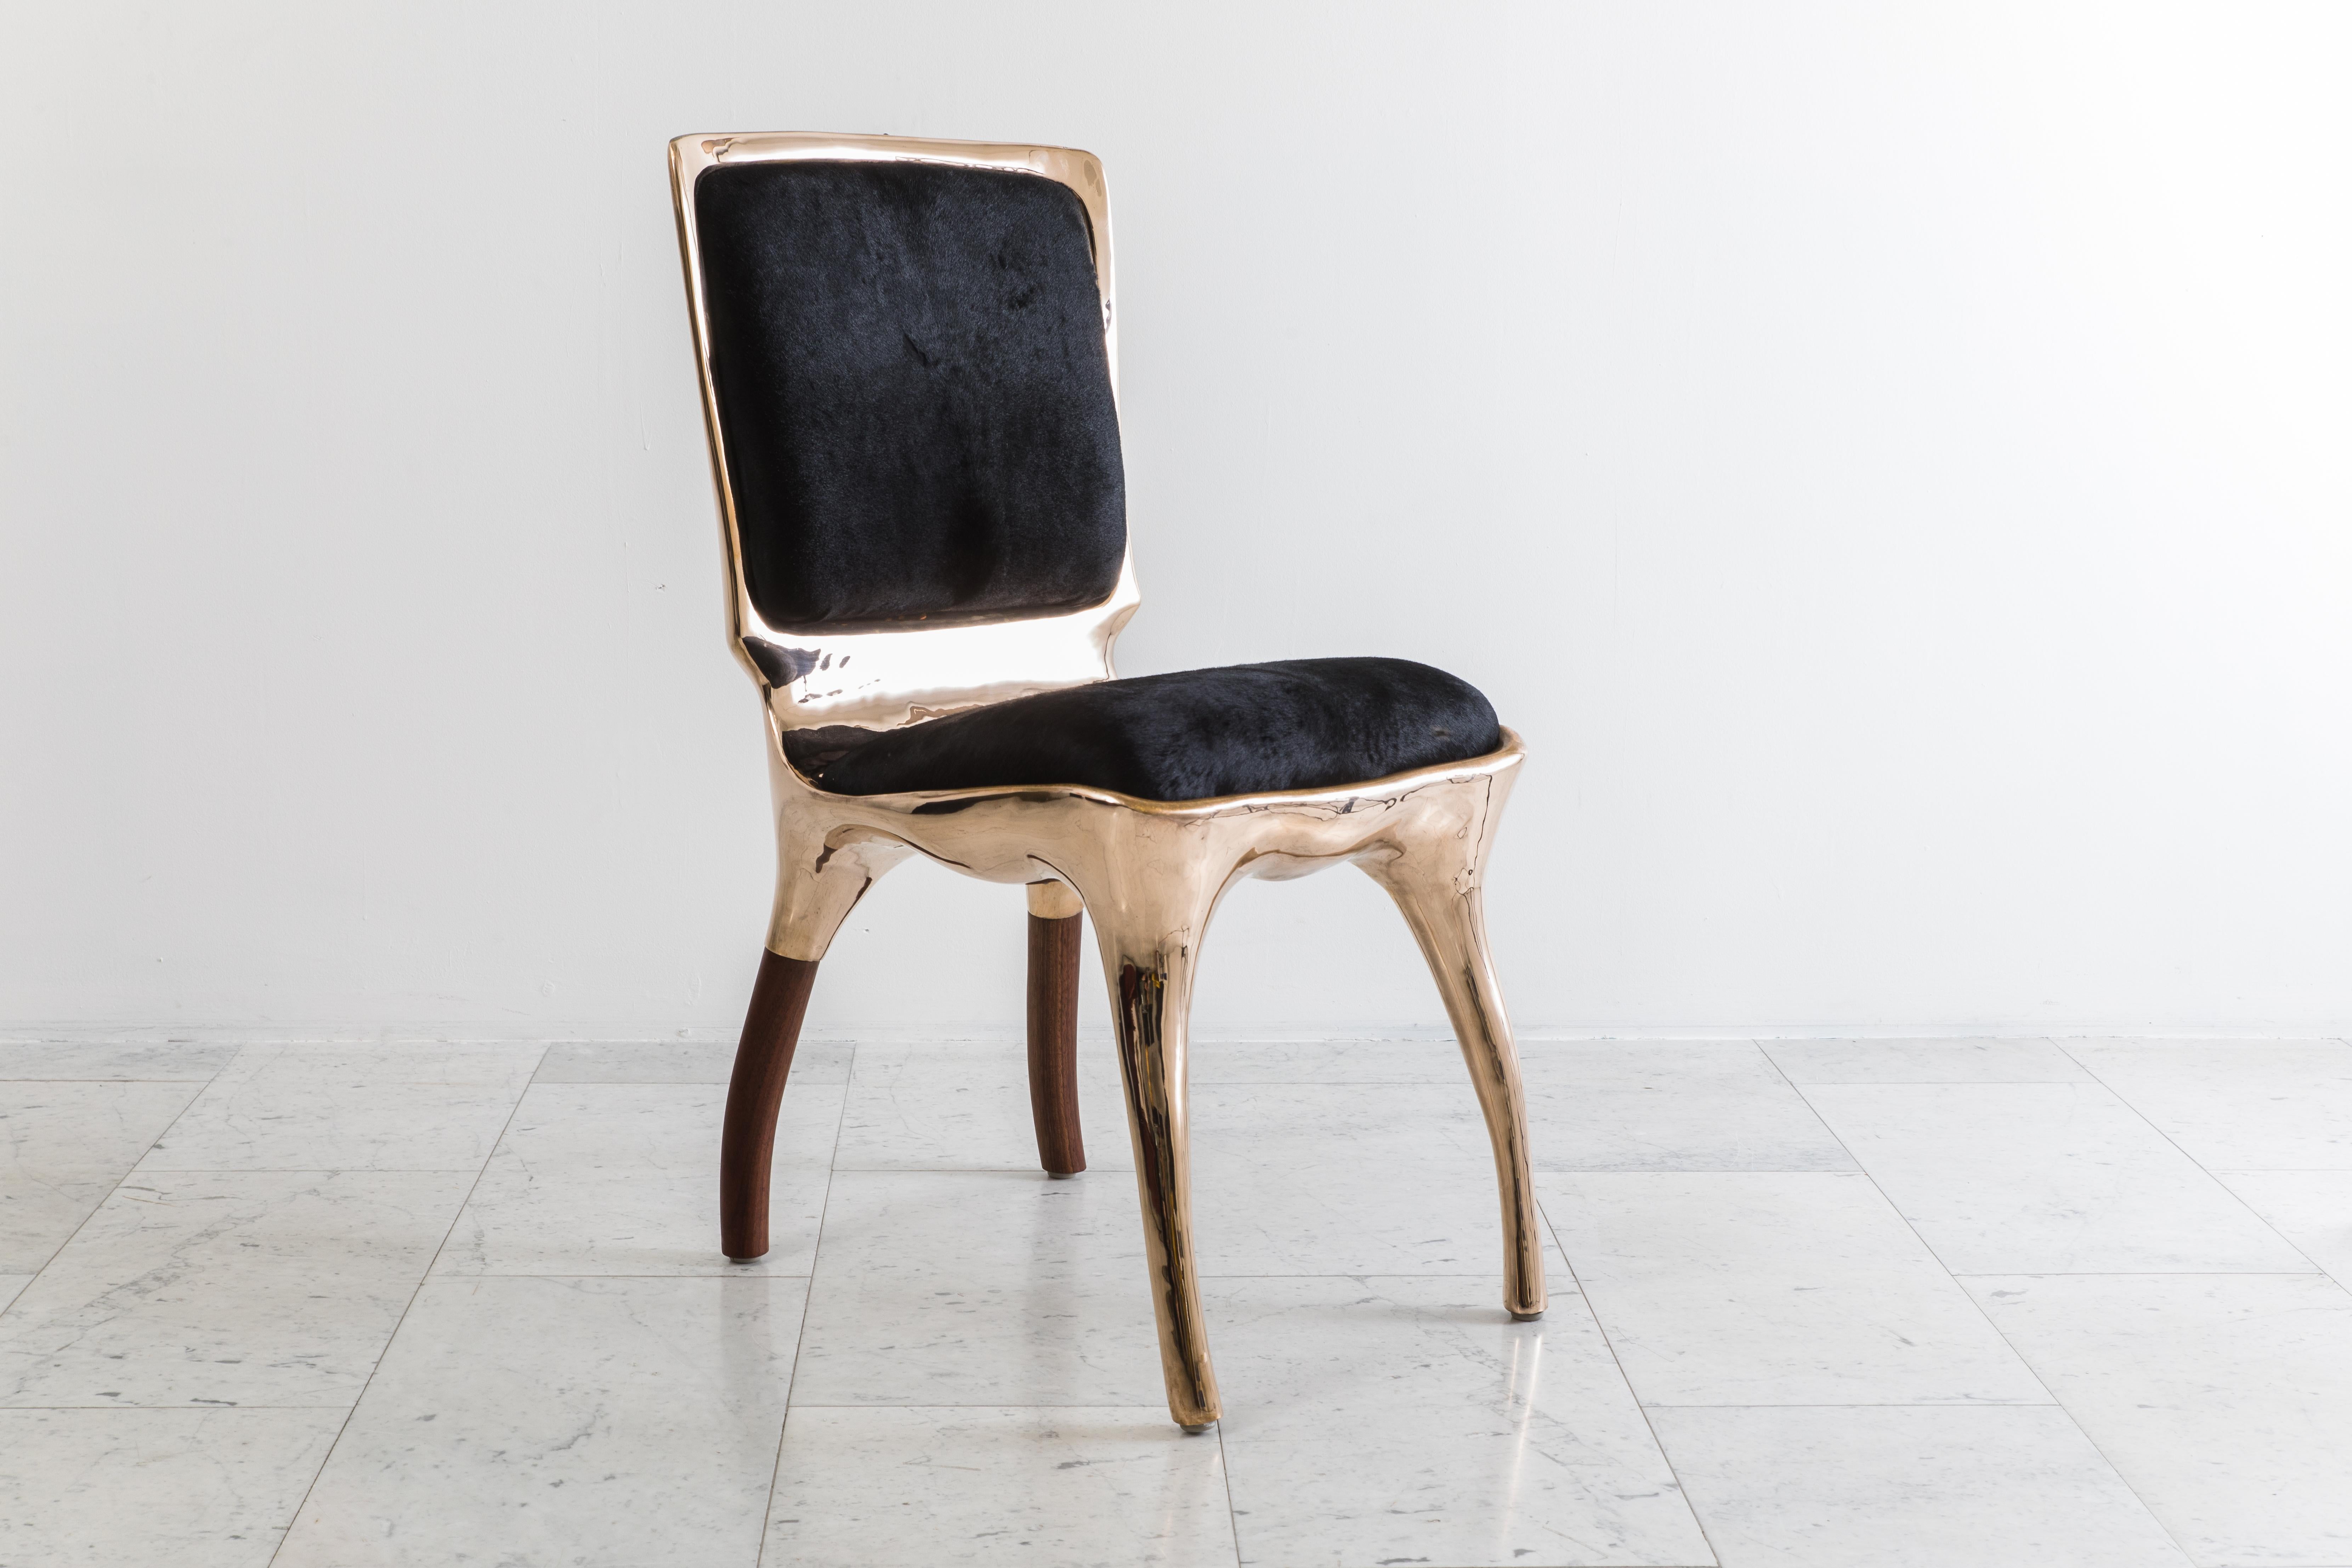 
Inspirée de son bureau Biche, la Tusk Chair II reflète le penchant d'Alex Roskin pour l'animalité des formes. Cette chaise polyvalente peut être utilisée comme chaise de salon, chaise de bureau ou groupée pour un ensemble de salle à manger.

La